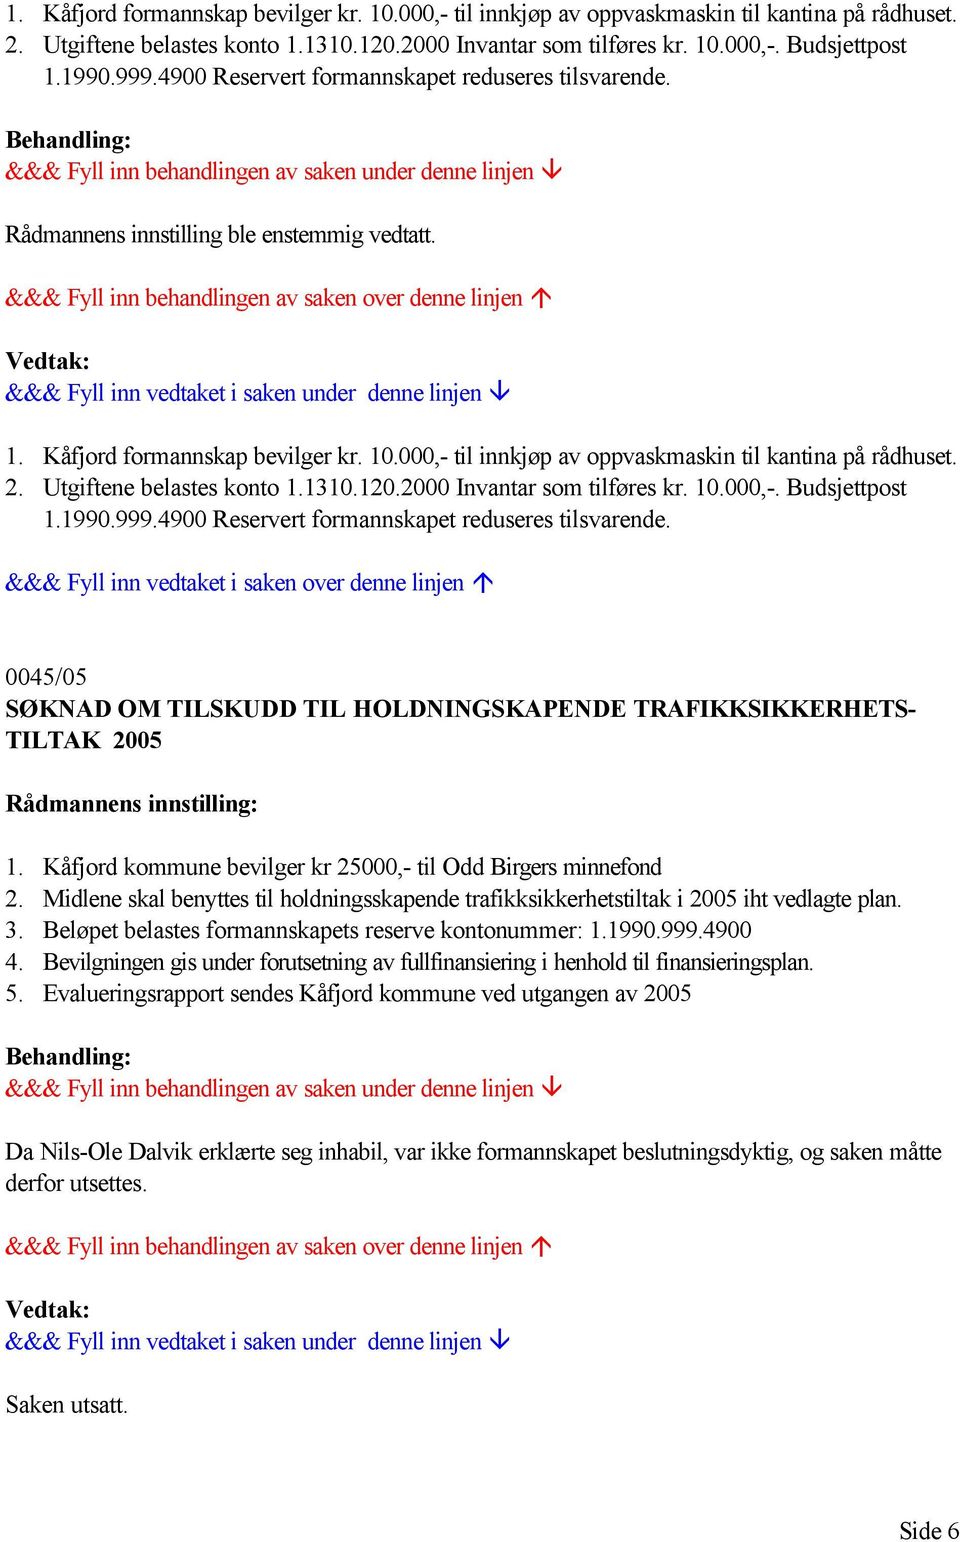 Kåfjord kommune bevilger kr 25000,- til Odd Birgers minnefond 2. Midlene skal benyttes til holdningsskapende trafikksikkerhetstiltak i 2005 iht vedlagte plan. 3.